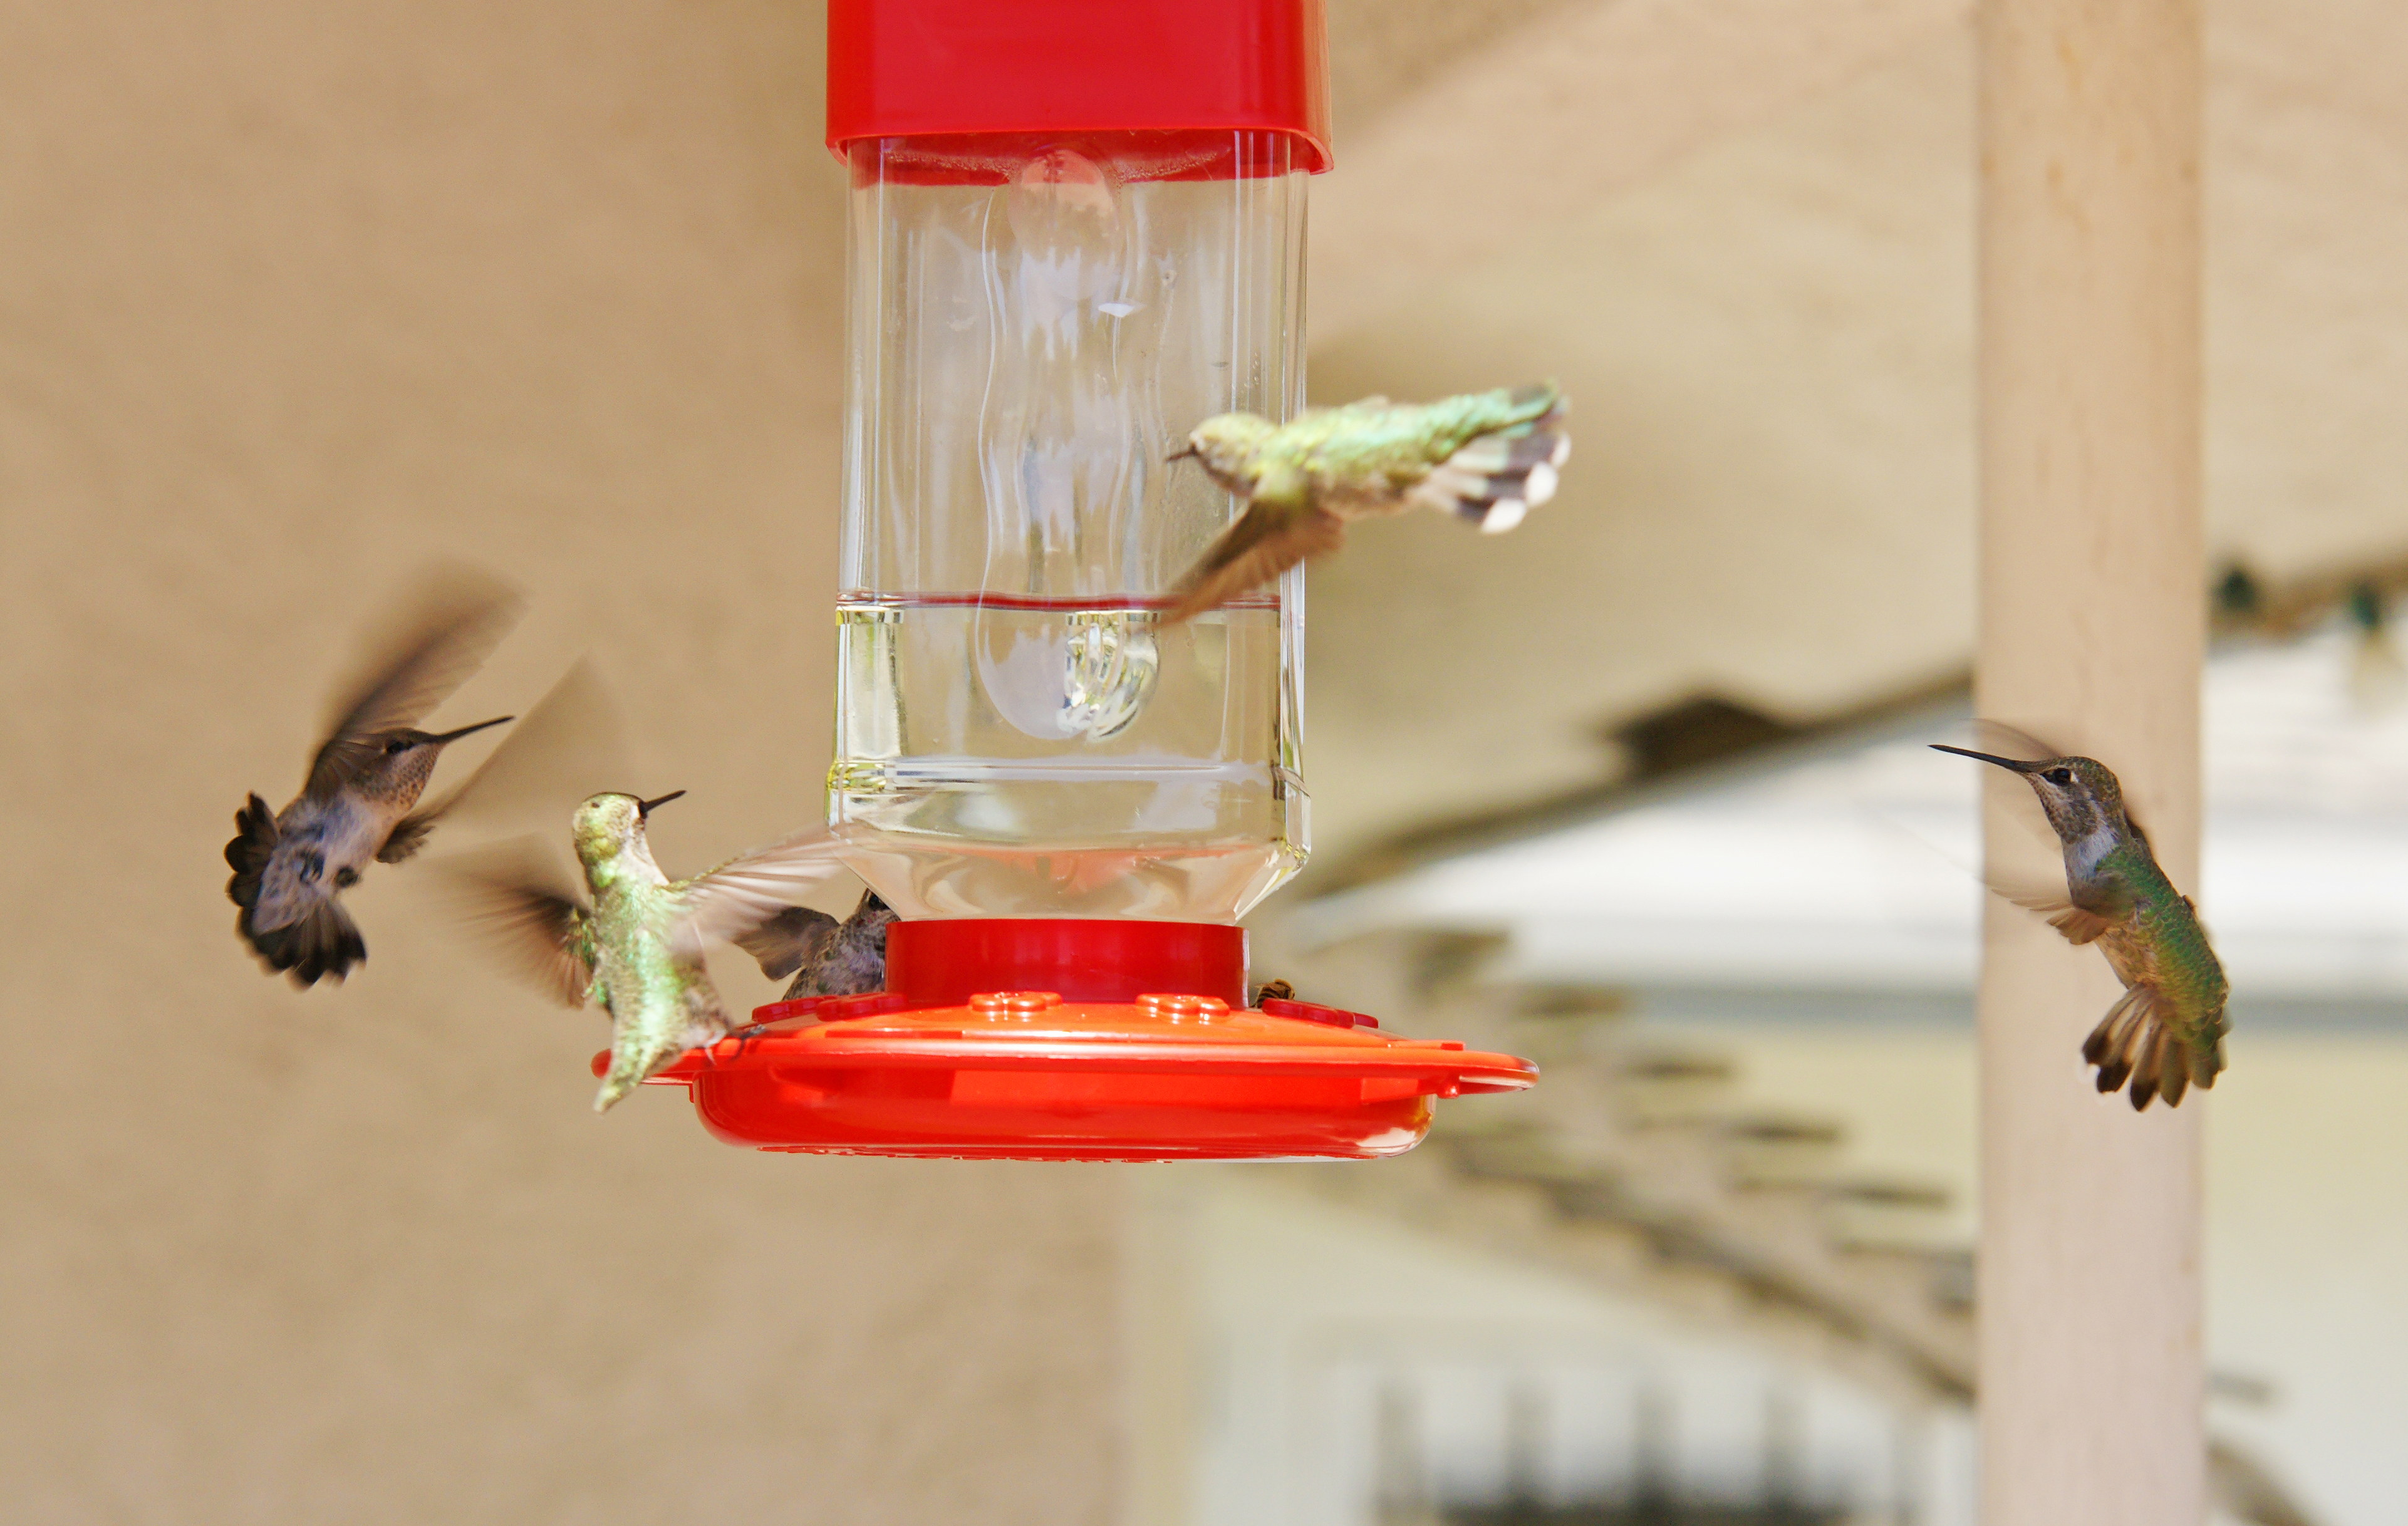 HummingbirdsGallery13